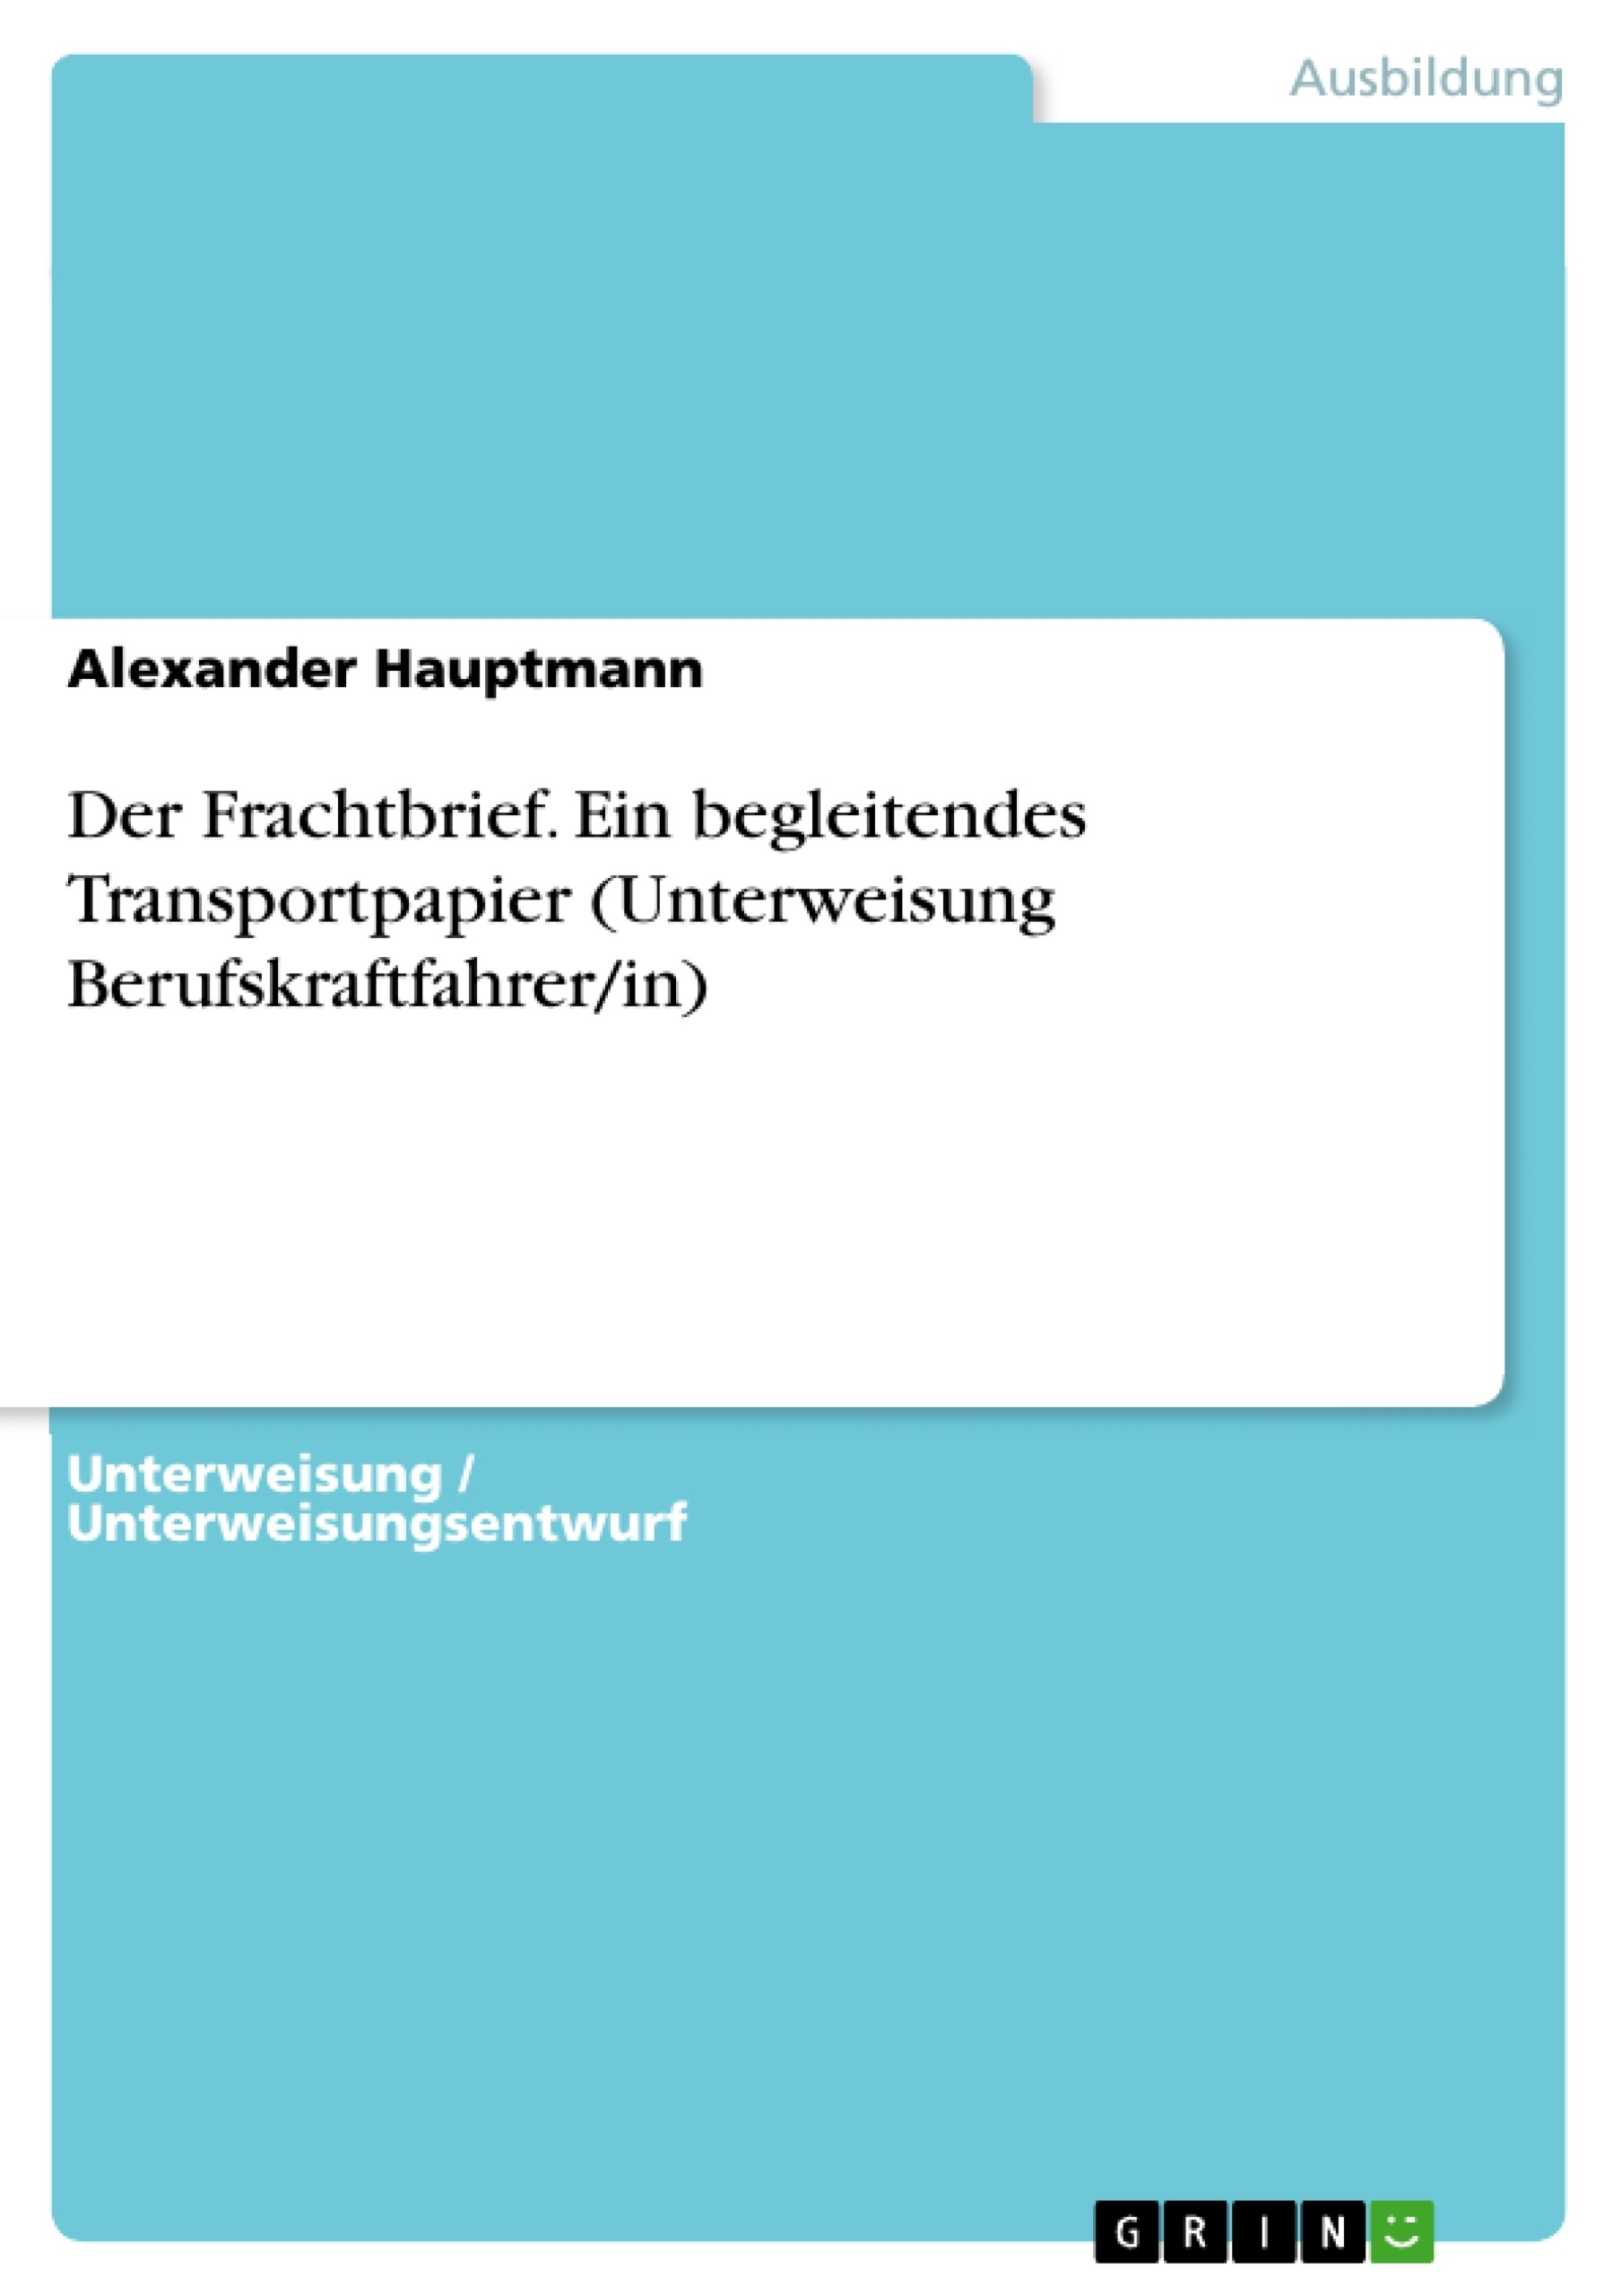 Título: Der Frachtbrief. Ein begleitendes Transportpapier (Unterweisung Berufskraftfahrer/in)